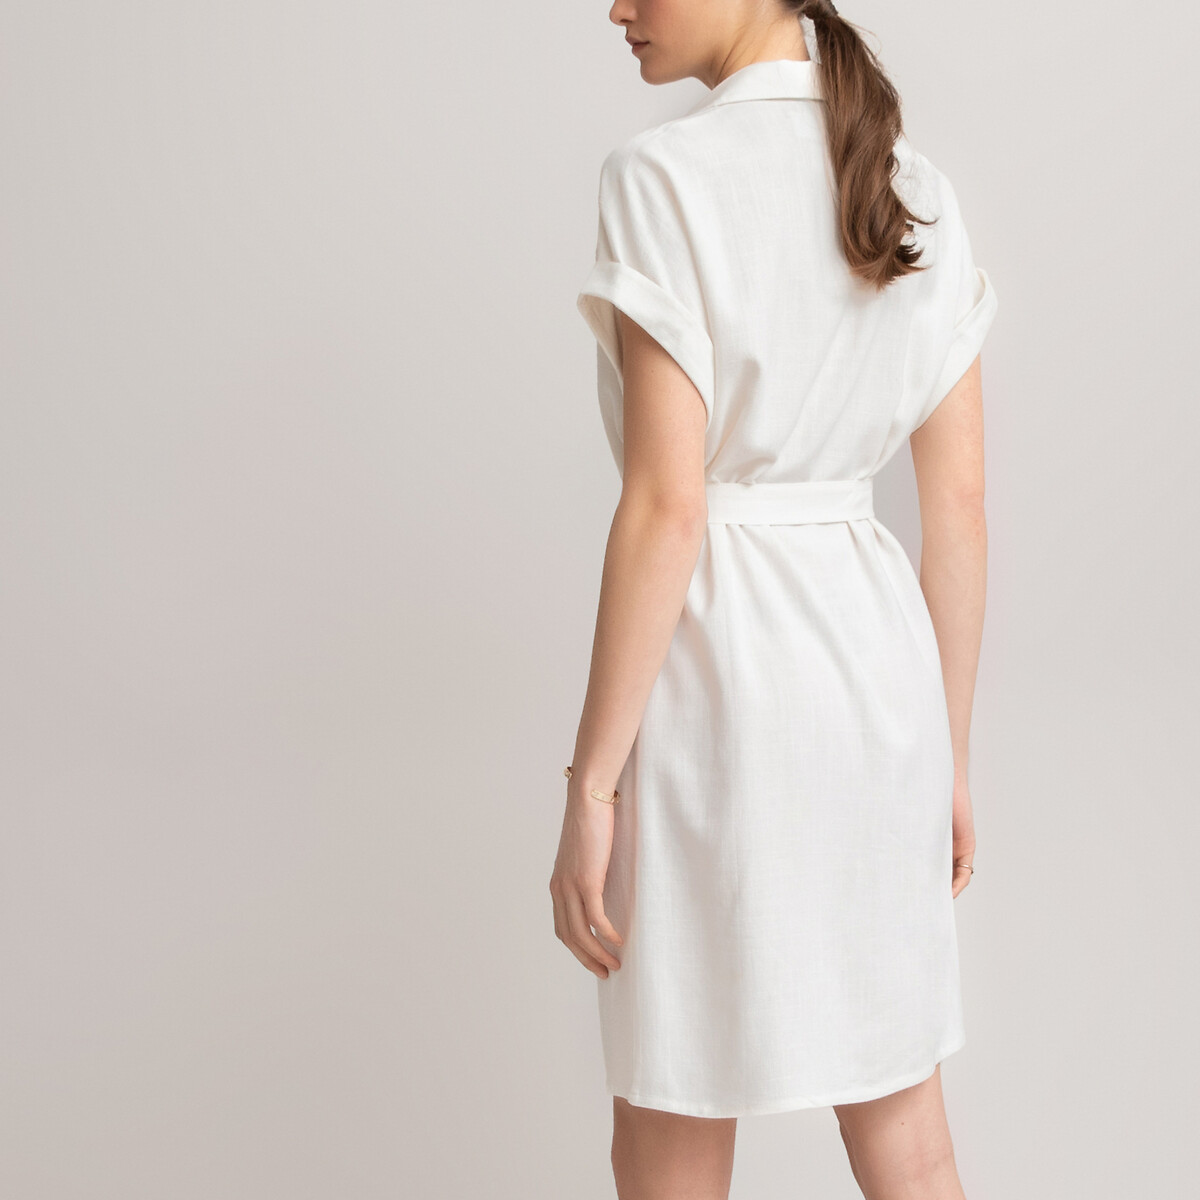 Платье-рубашка LaRedoute С короткими рукавами 34 (FR) - 40 (RUS) белый, размер 34 (FR) - 40 (RUS) С короткими рукавами 34 (FR) - 40 (RUS) белый - фото 4